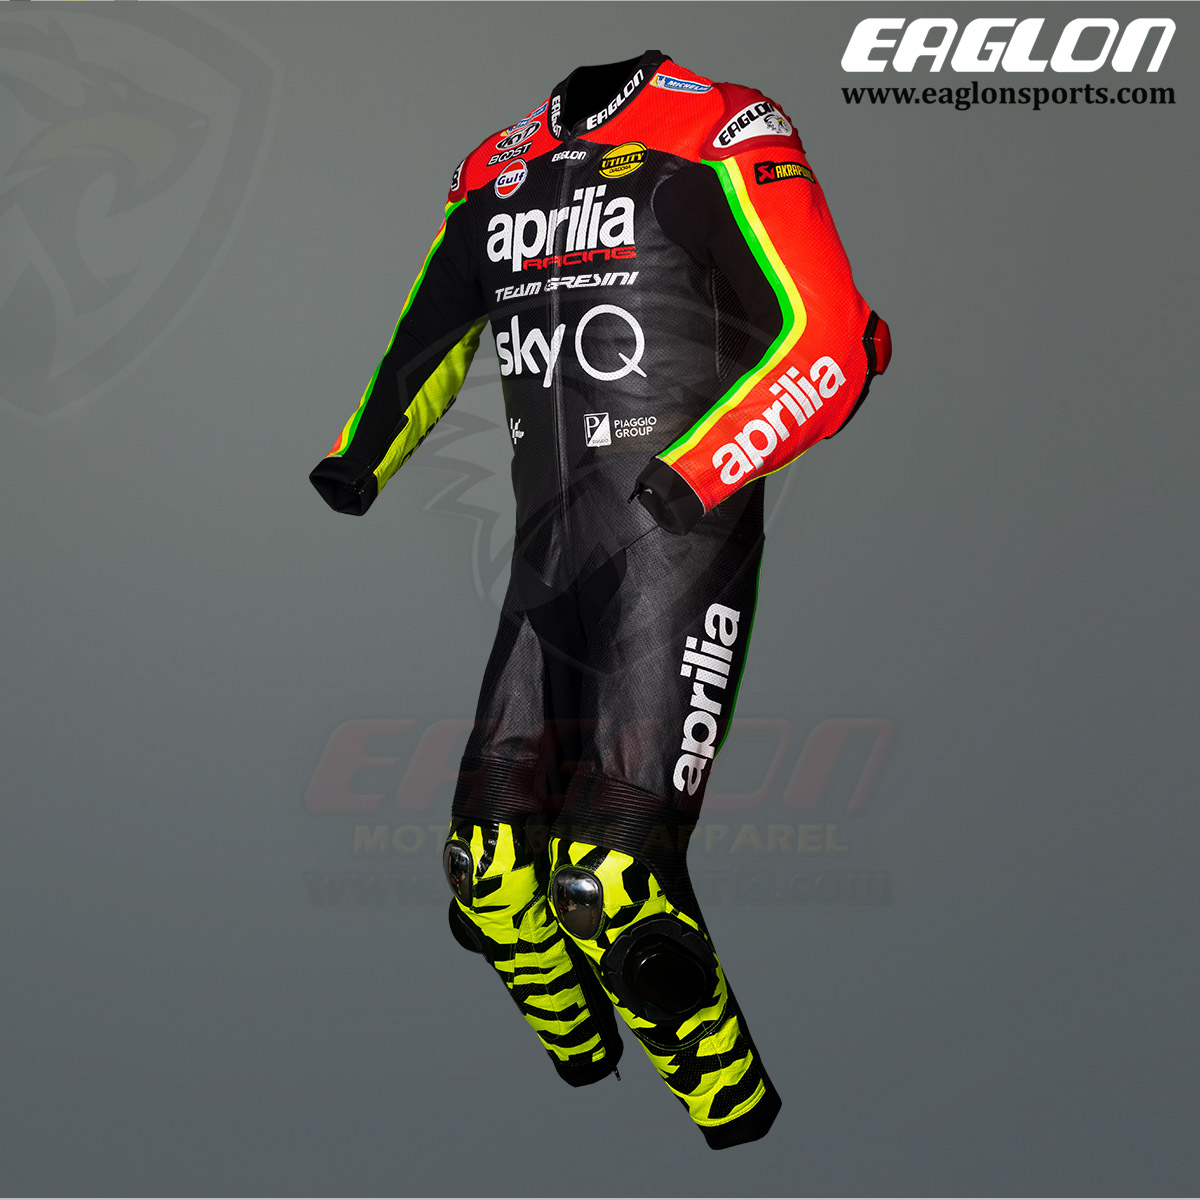 Aliex-Espargaro-Aprilia-MotoGP-2020-Leather-Race-Suit